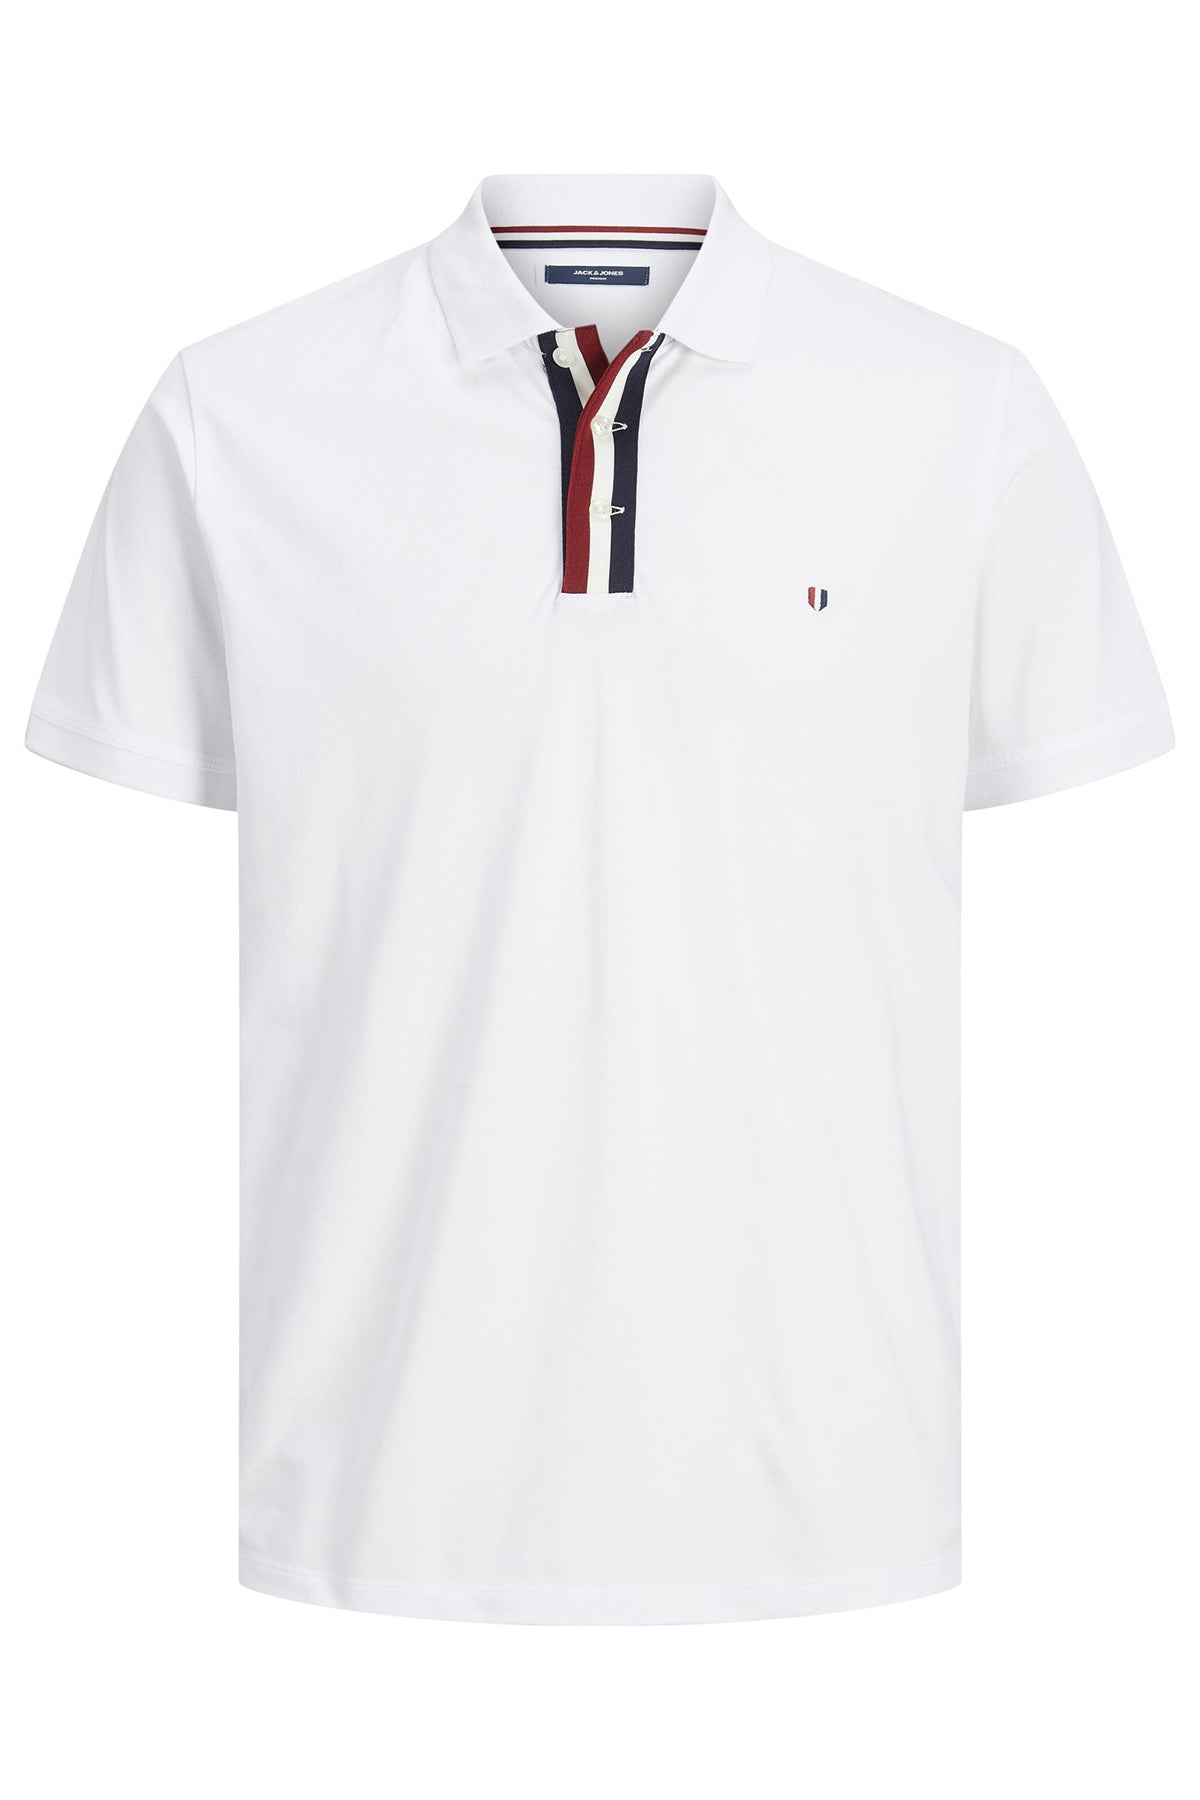 Jack & Jones Premium Cotton Regular Fit Buttoned Men's Polo T Shirt - WHITE